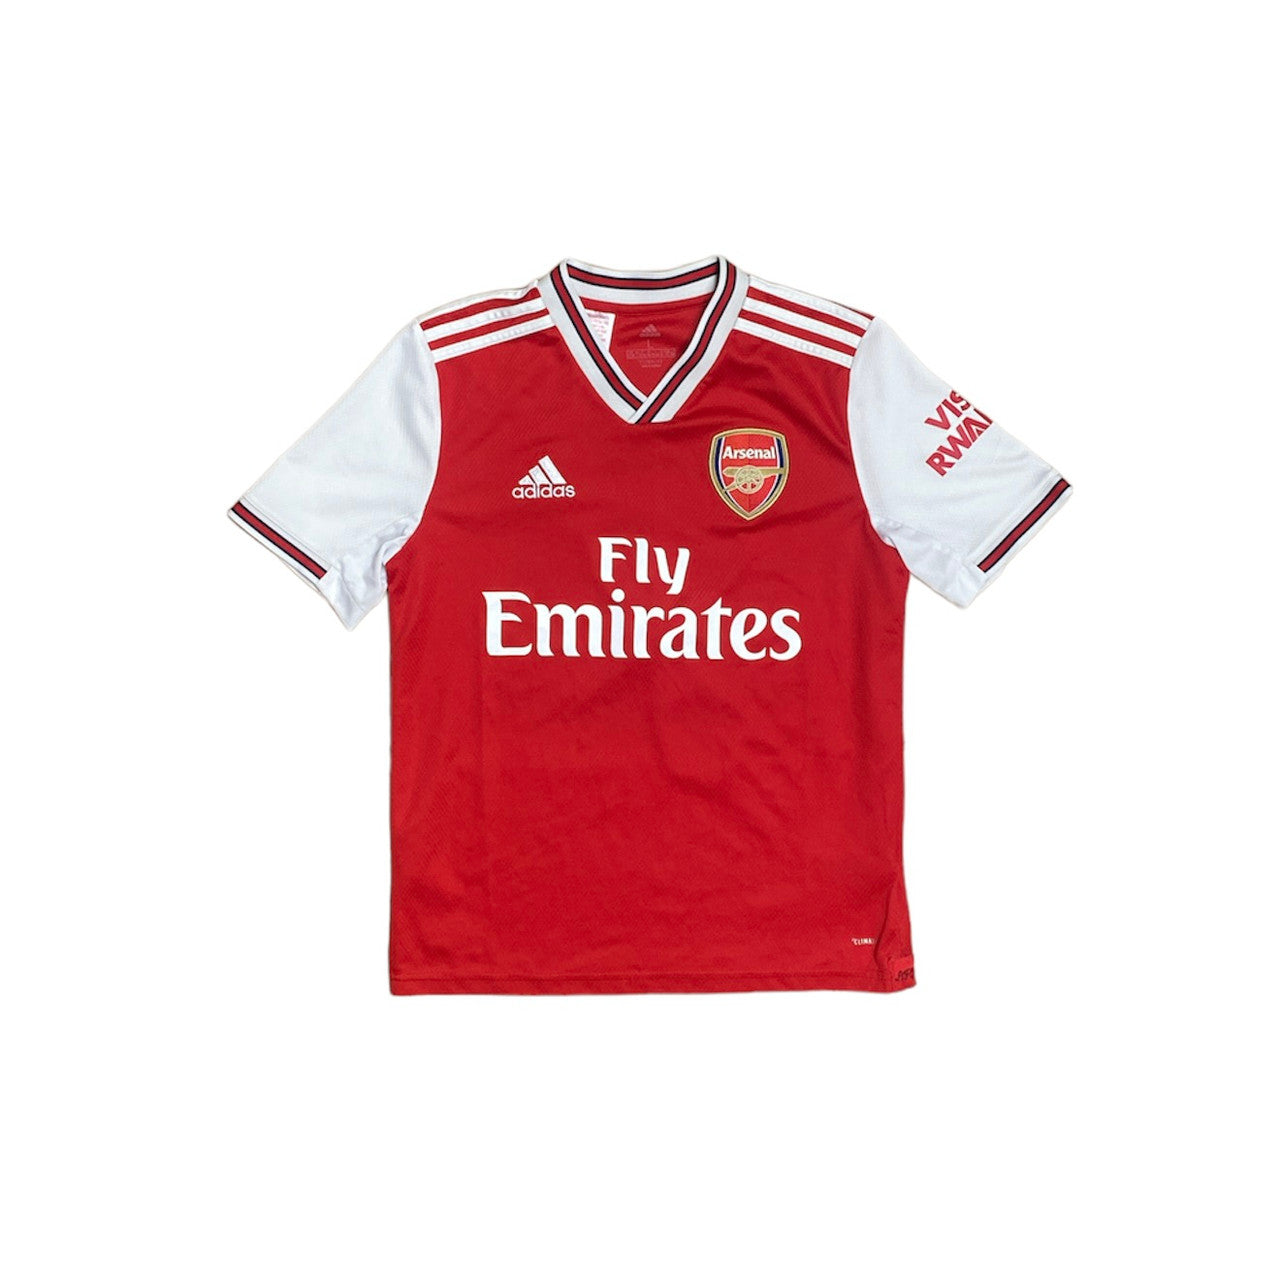 Adidas Arsenal Jersey (Youth)